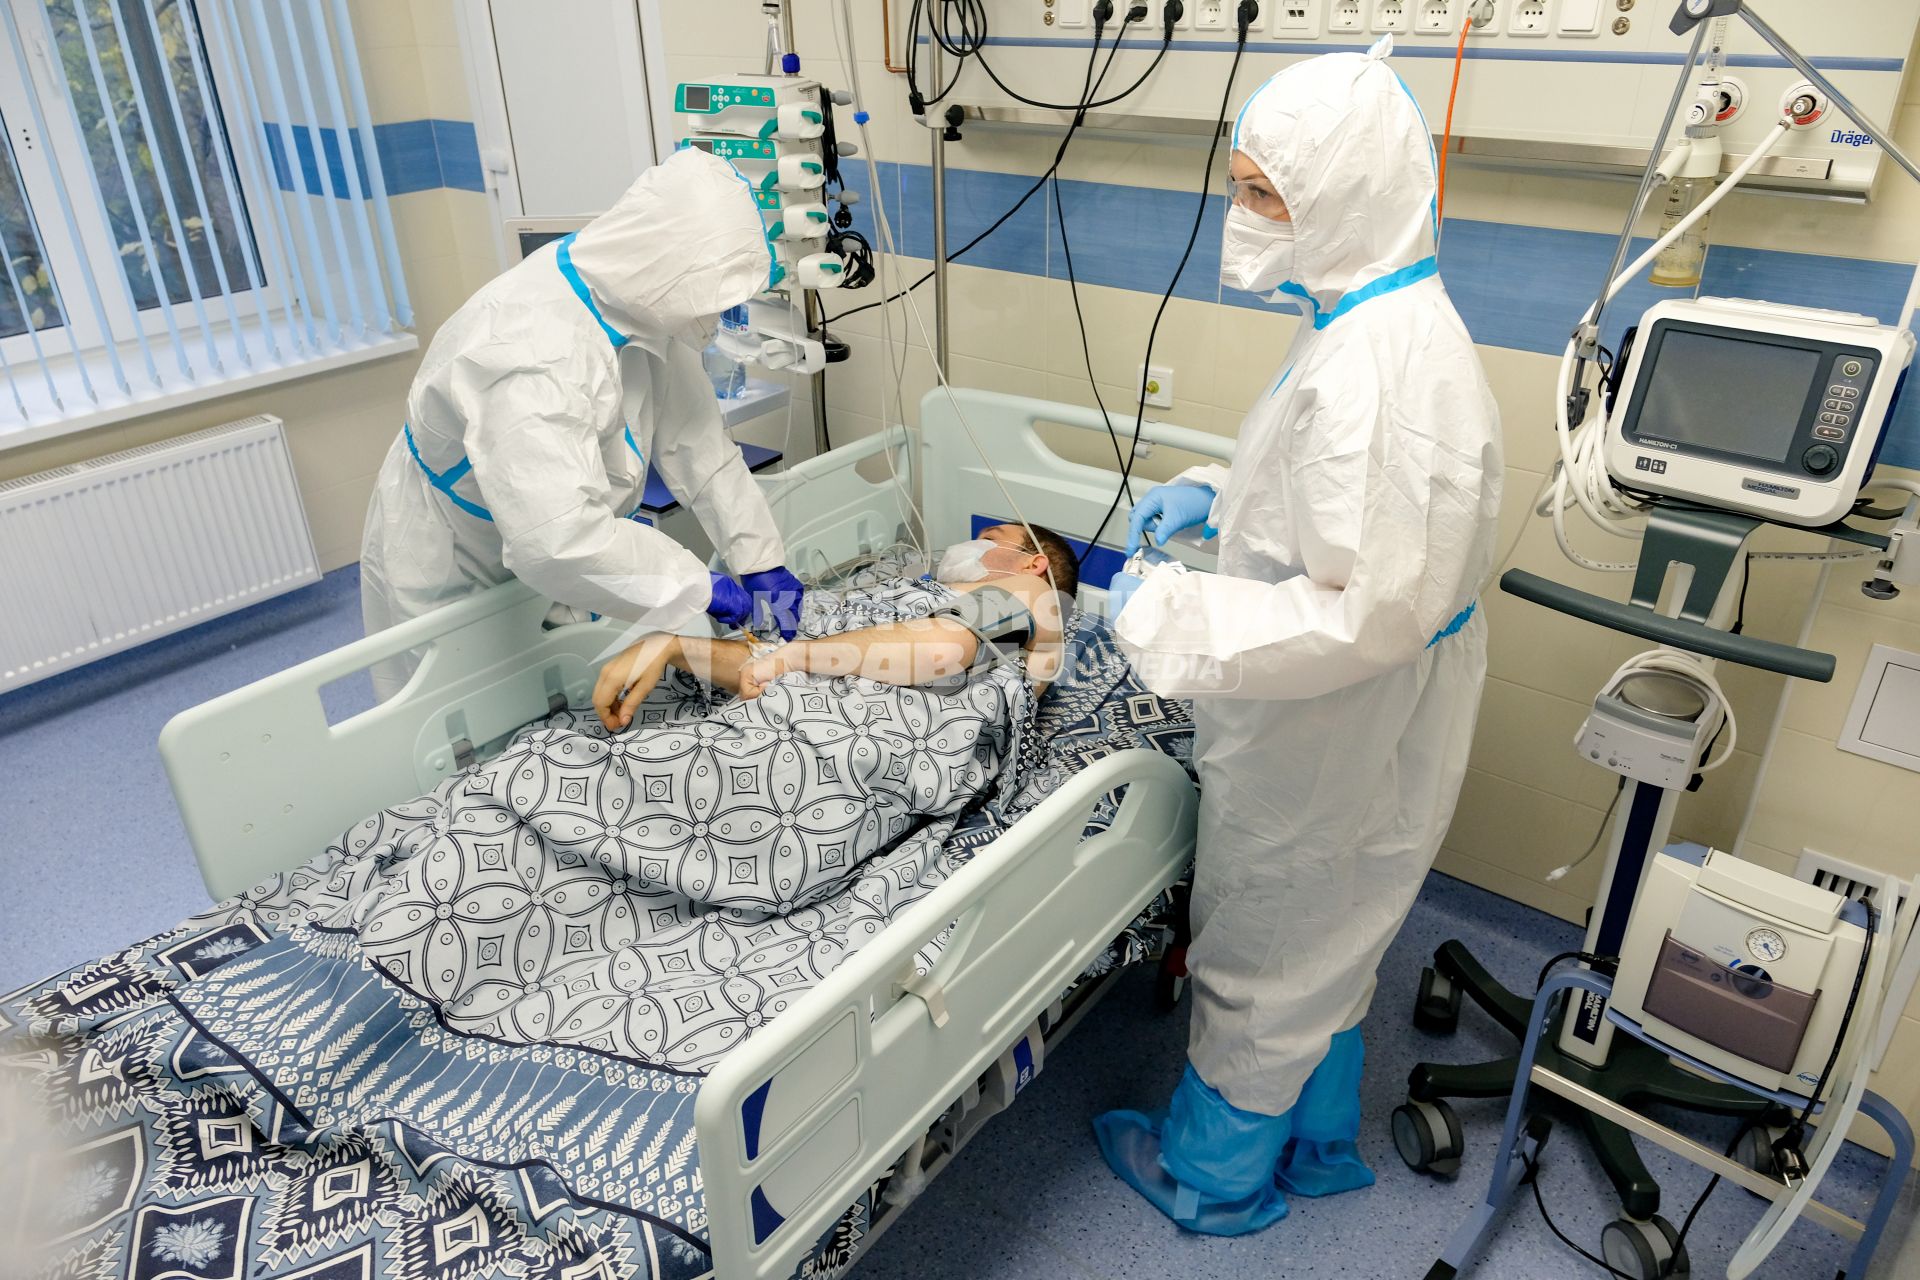 Санкт-Петербург. Медицинские работники и пациент в Александровской  больнице, где оказывают помощь пациентам с коронавирусной инфекцией COVID-19.